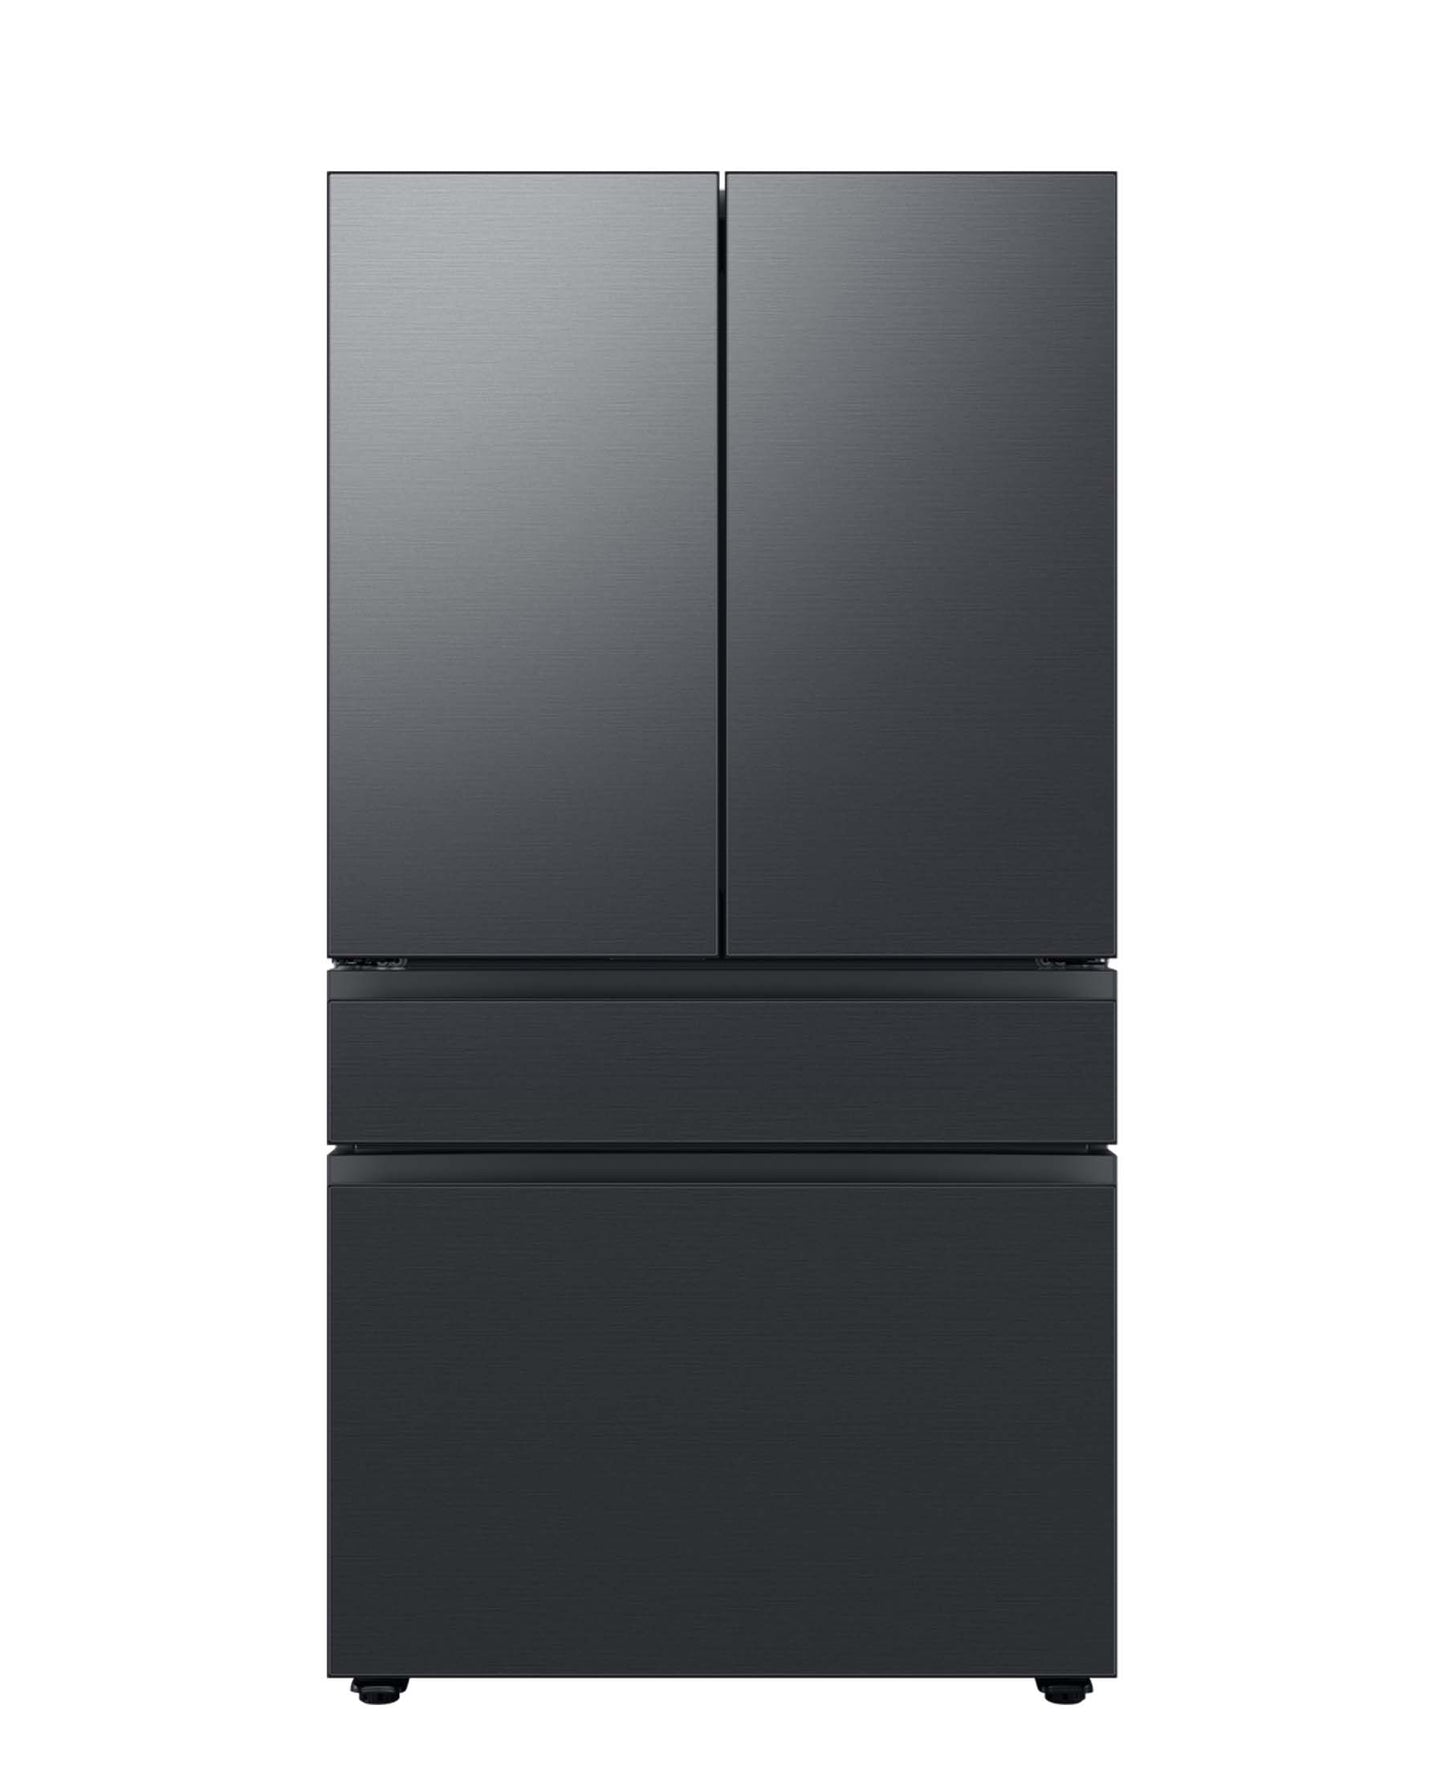 Samsung Bespoke 4-Door French Door Refrigerator - Matte Black Stainless Steel